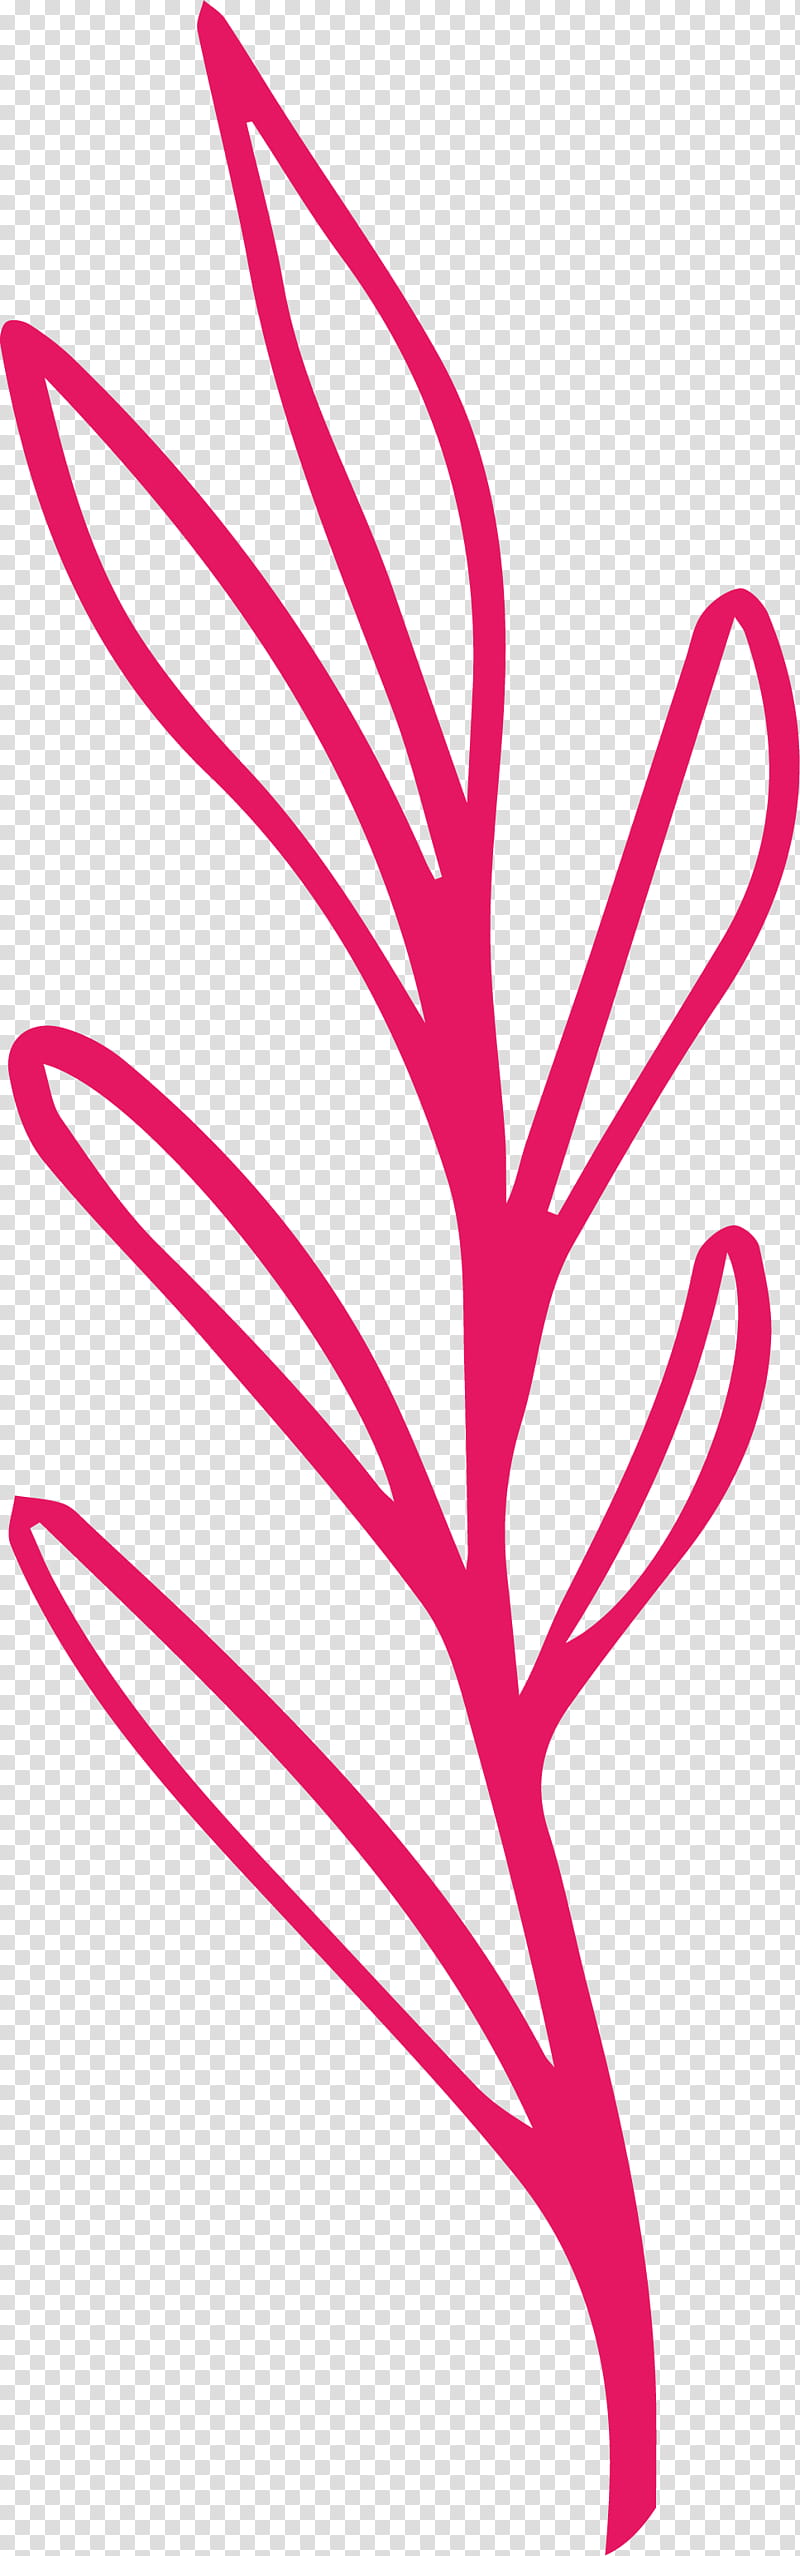 simple leaf simple leaf drawing simple leaf outline, Plant Stem, Line Art, Pink M, Mtree, Meter, Flower, Plants transparent background PNG clipart